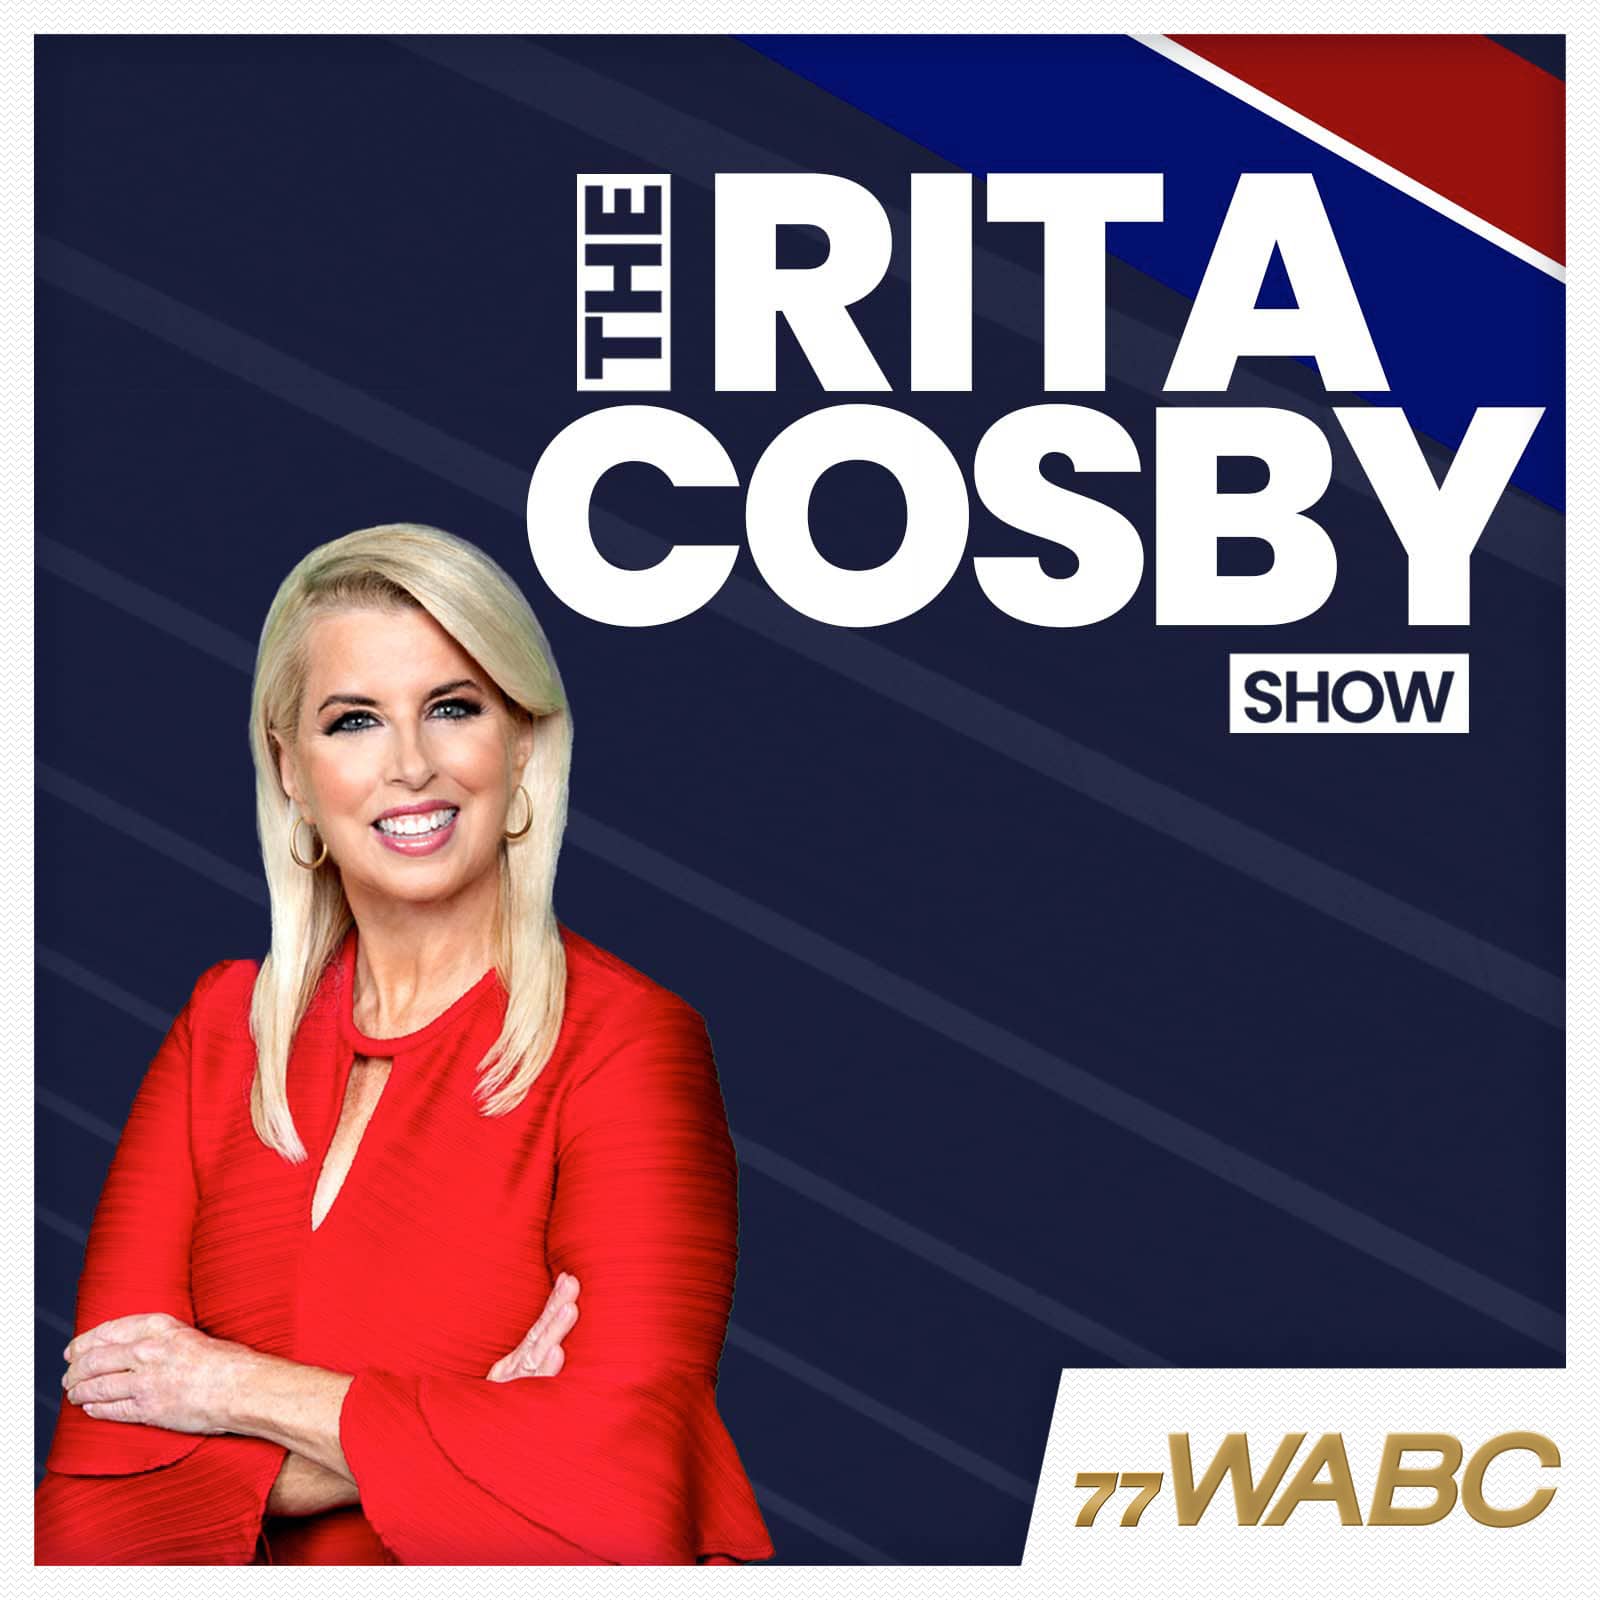 rita-cosby-podcast-new-logo-202